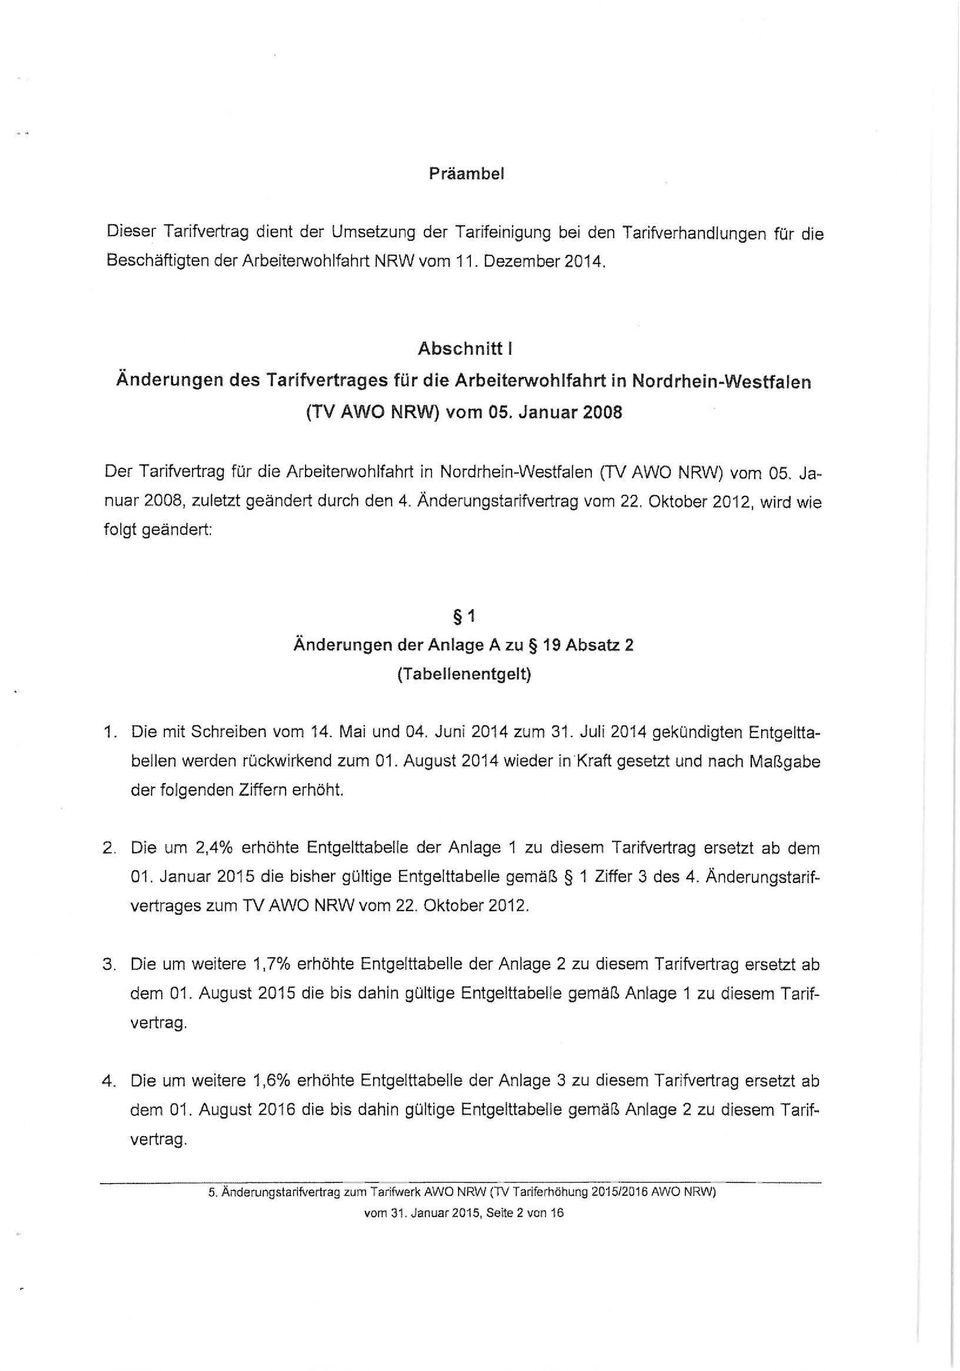 Januar 2008 Der Tarifvertrag für die Arbeiterwohlfahrt in Nordrhein-Westfalen (TV AWO NRW) vom 05. Januar 2008, zuletzt geändert durch den 4. Änderungstarifvertrag vom 22. Oktober 2012.